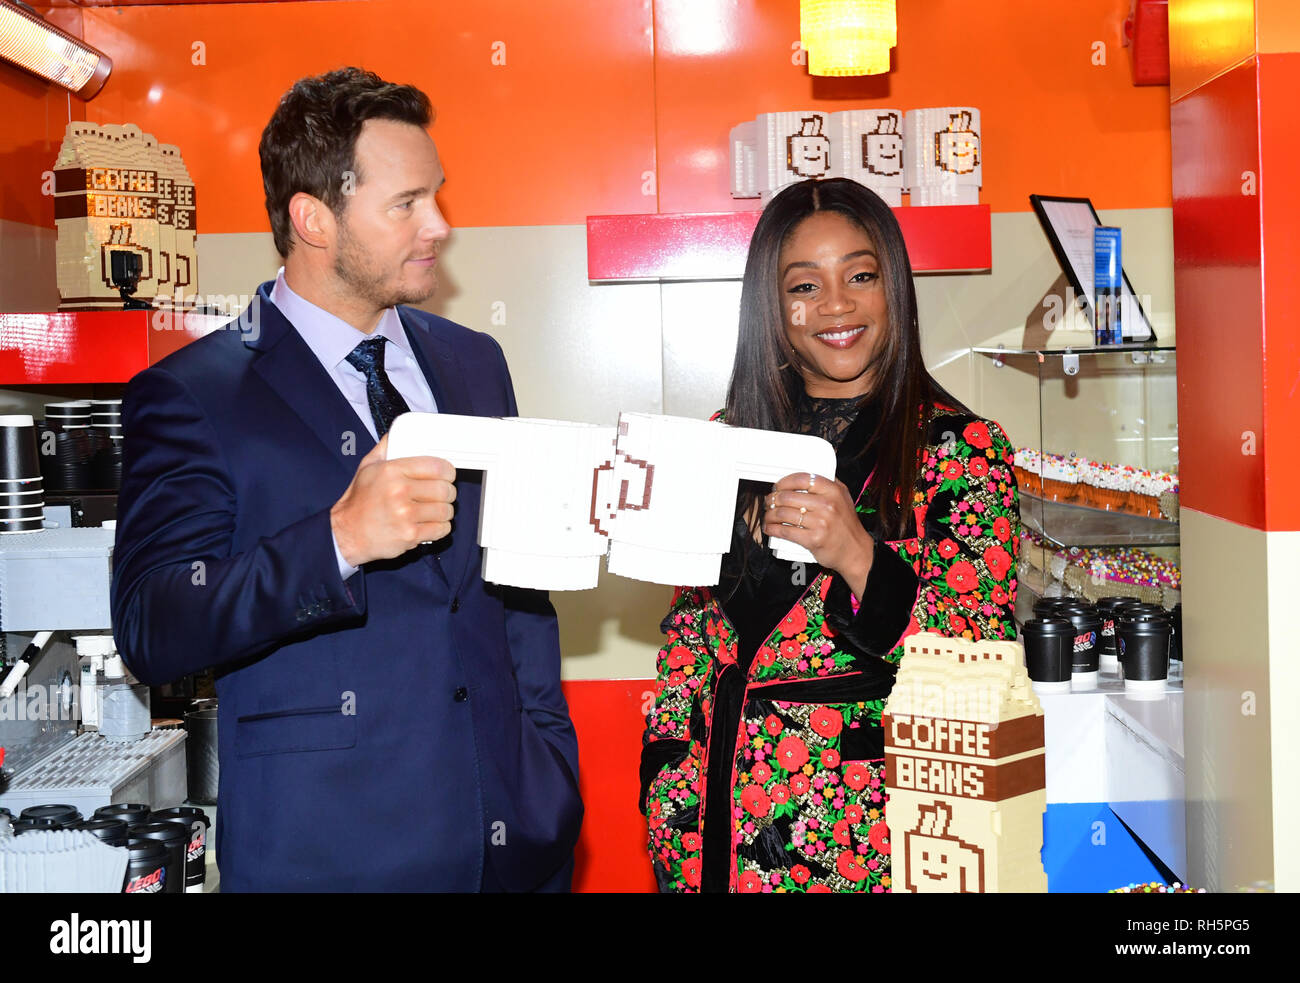 Stars der Lego Film 2, Chris Pratt und Tiffany Haddish, dienen die ersten Kunden Kaffee wie Sie offiziell die Lego öffnen Sie das Popup-menü Cafe' der Kaffee Kette" auf der South Bank, London in Partnerschaft mit UNICEF, Bewusstsein und Erträge zu erhöhen. Stockfoto